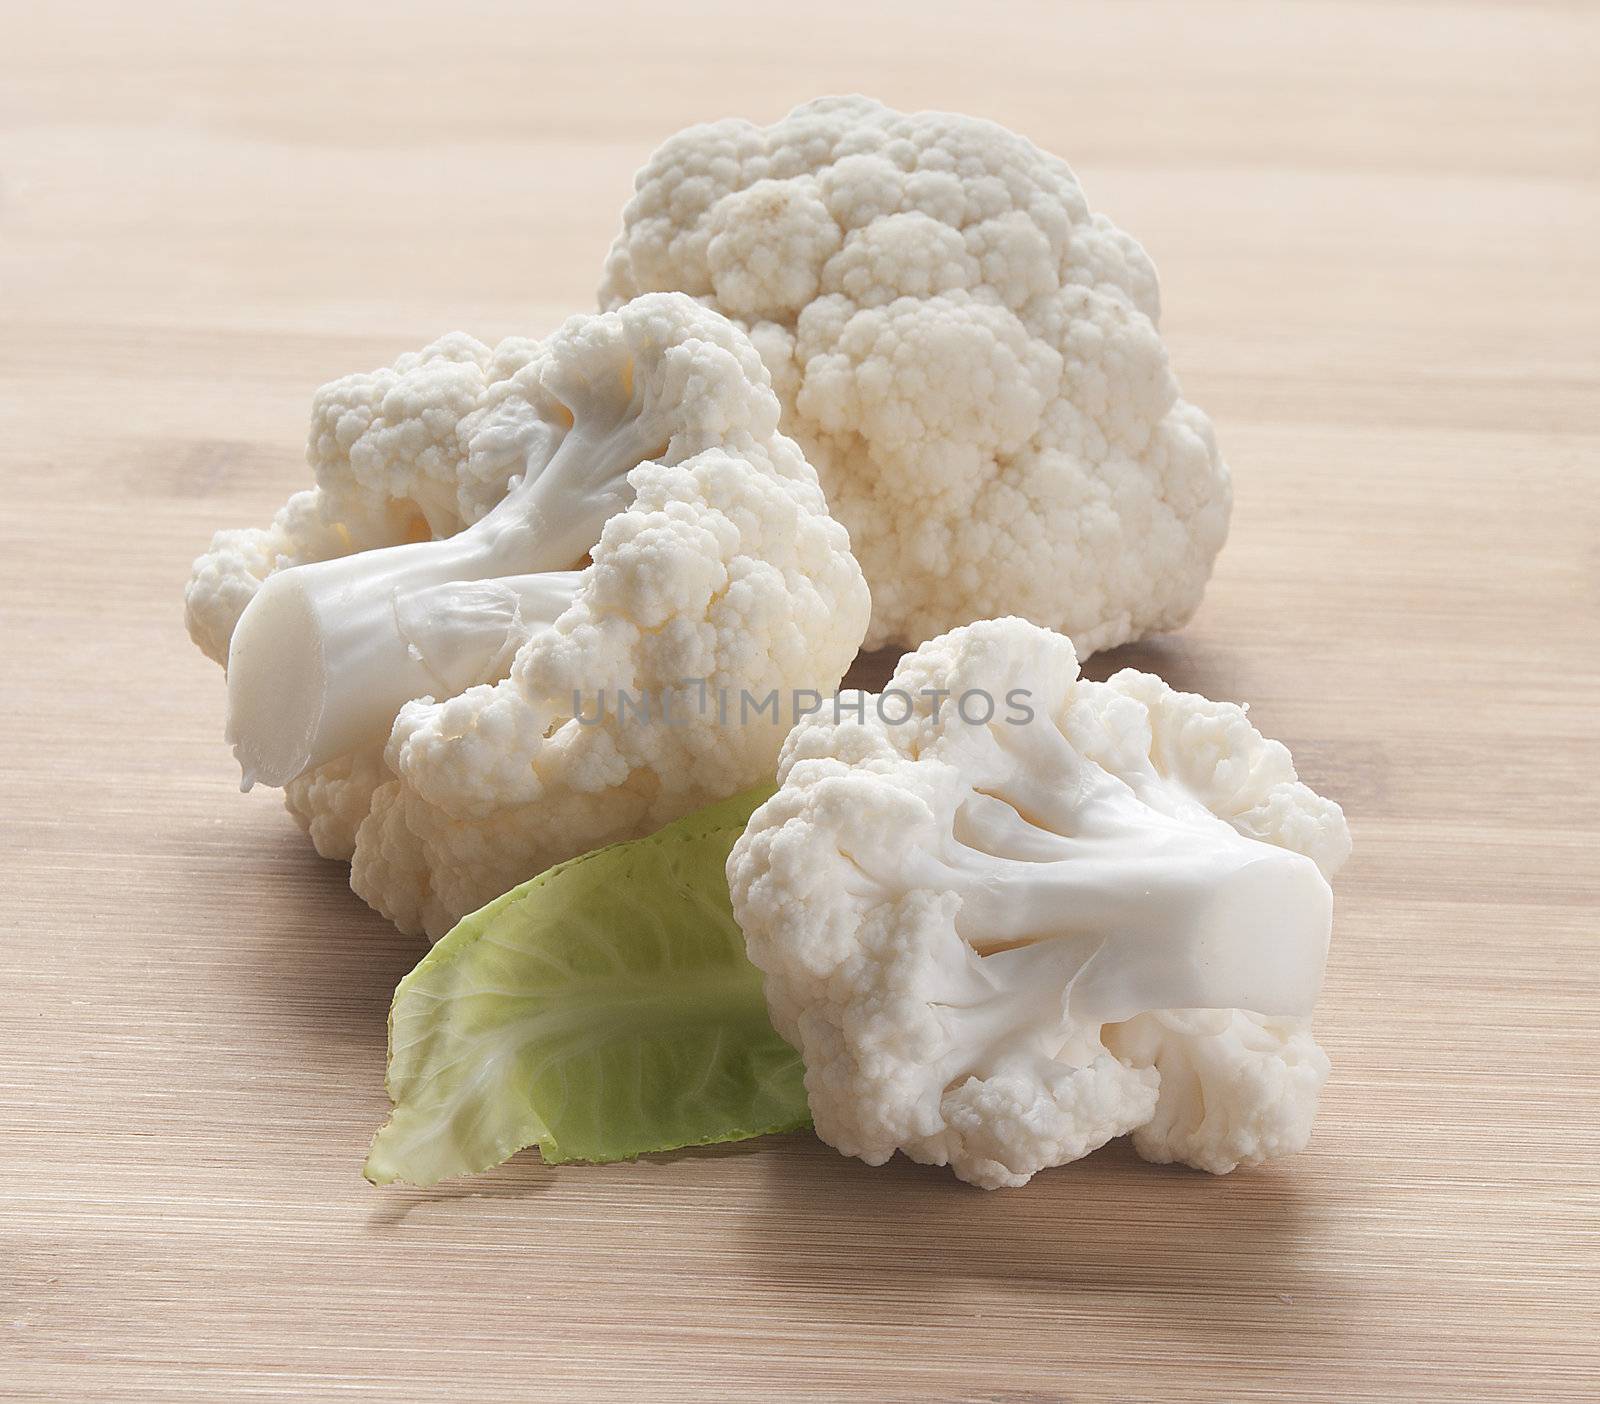 Cauliflower by Angorius